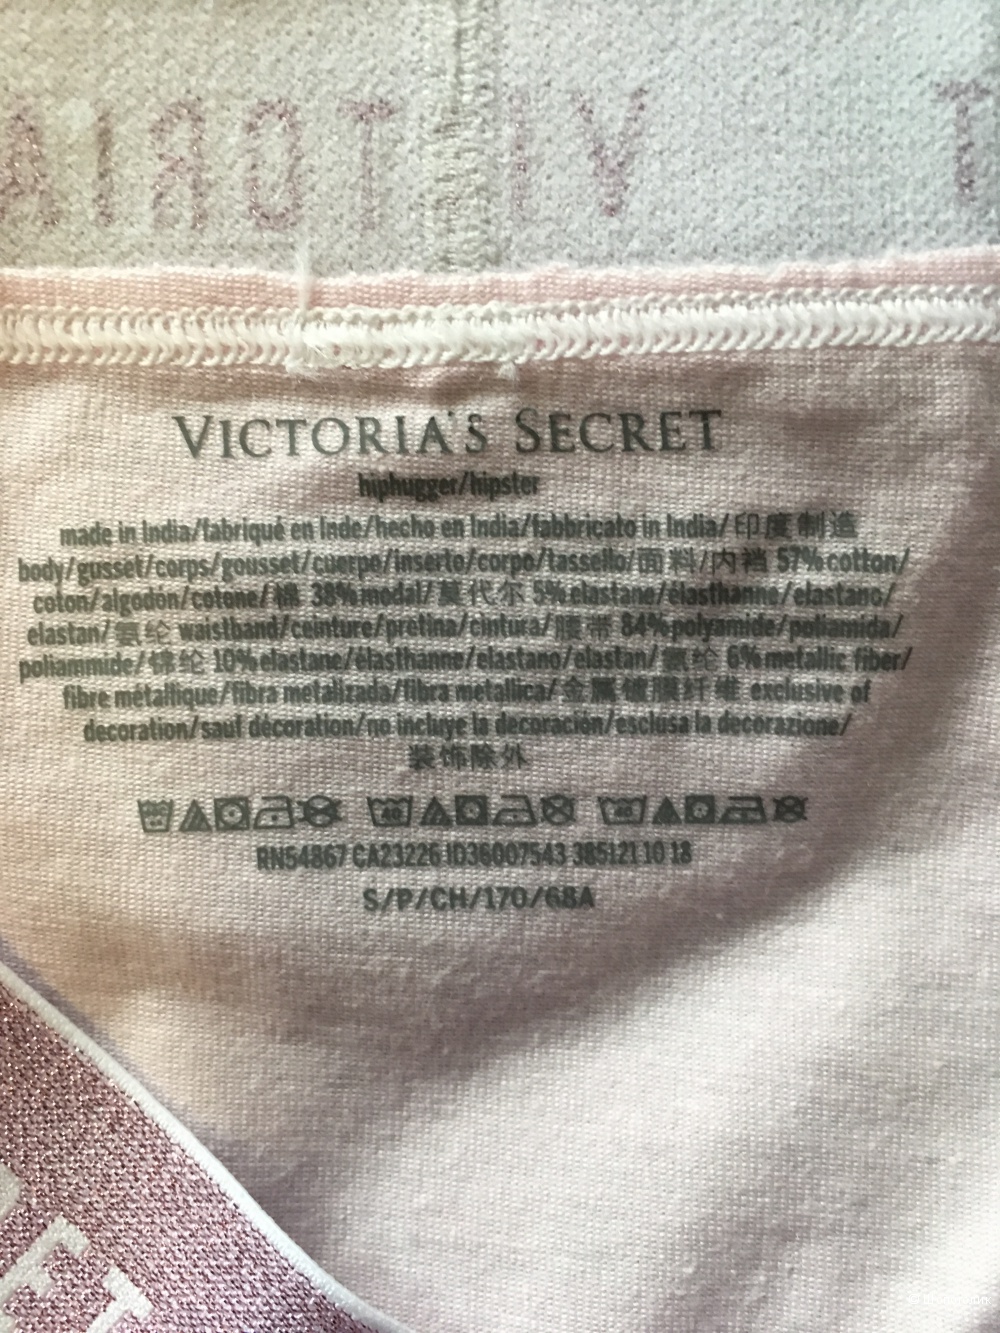 Трусики Victoria's secret, размер S